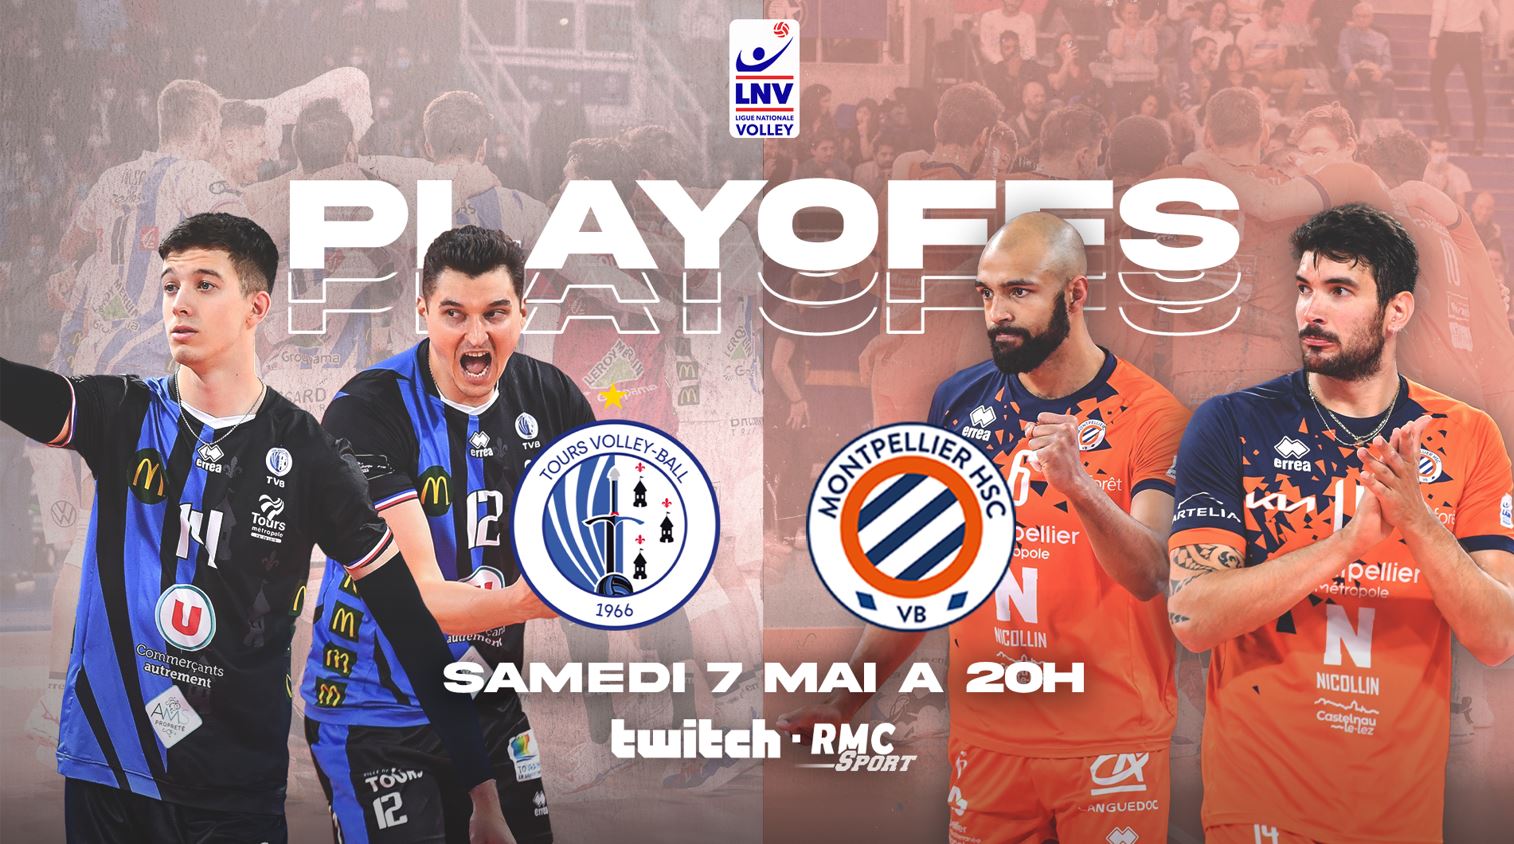 Tours / Montpellier (TV/Streaming) Comment suivre la Finale Aller de Ligue AM samedi ?